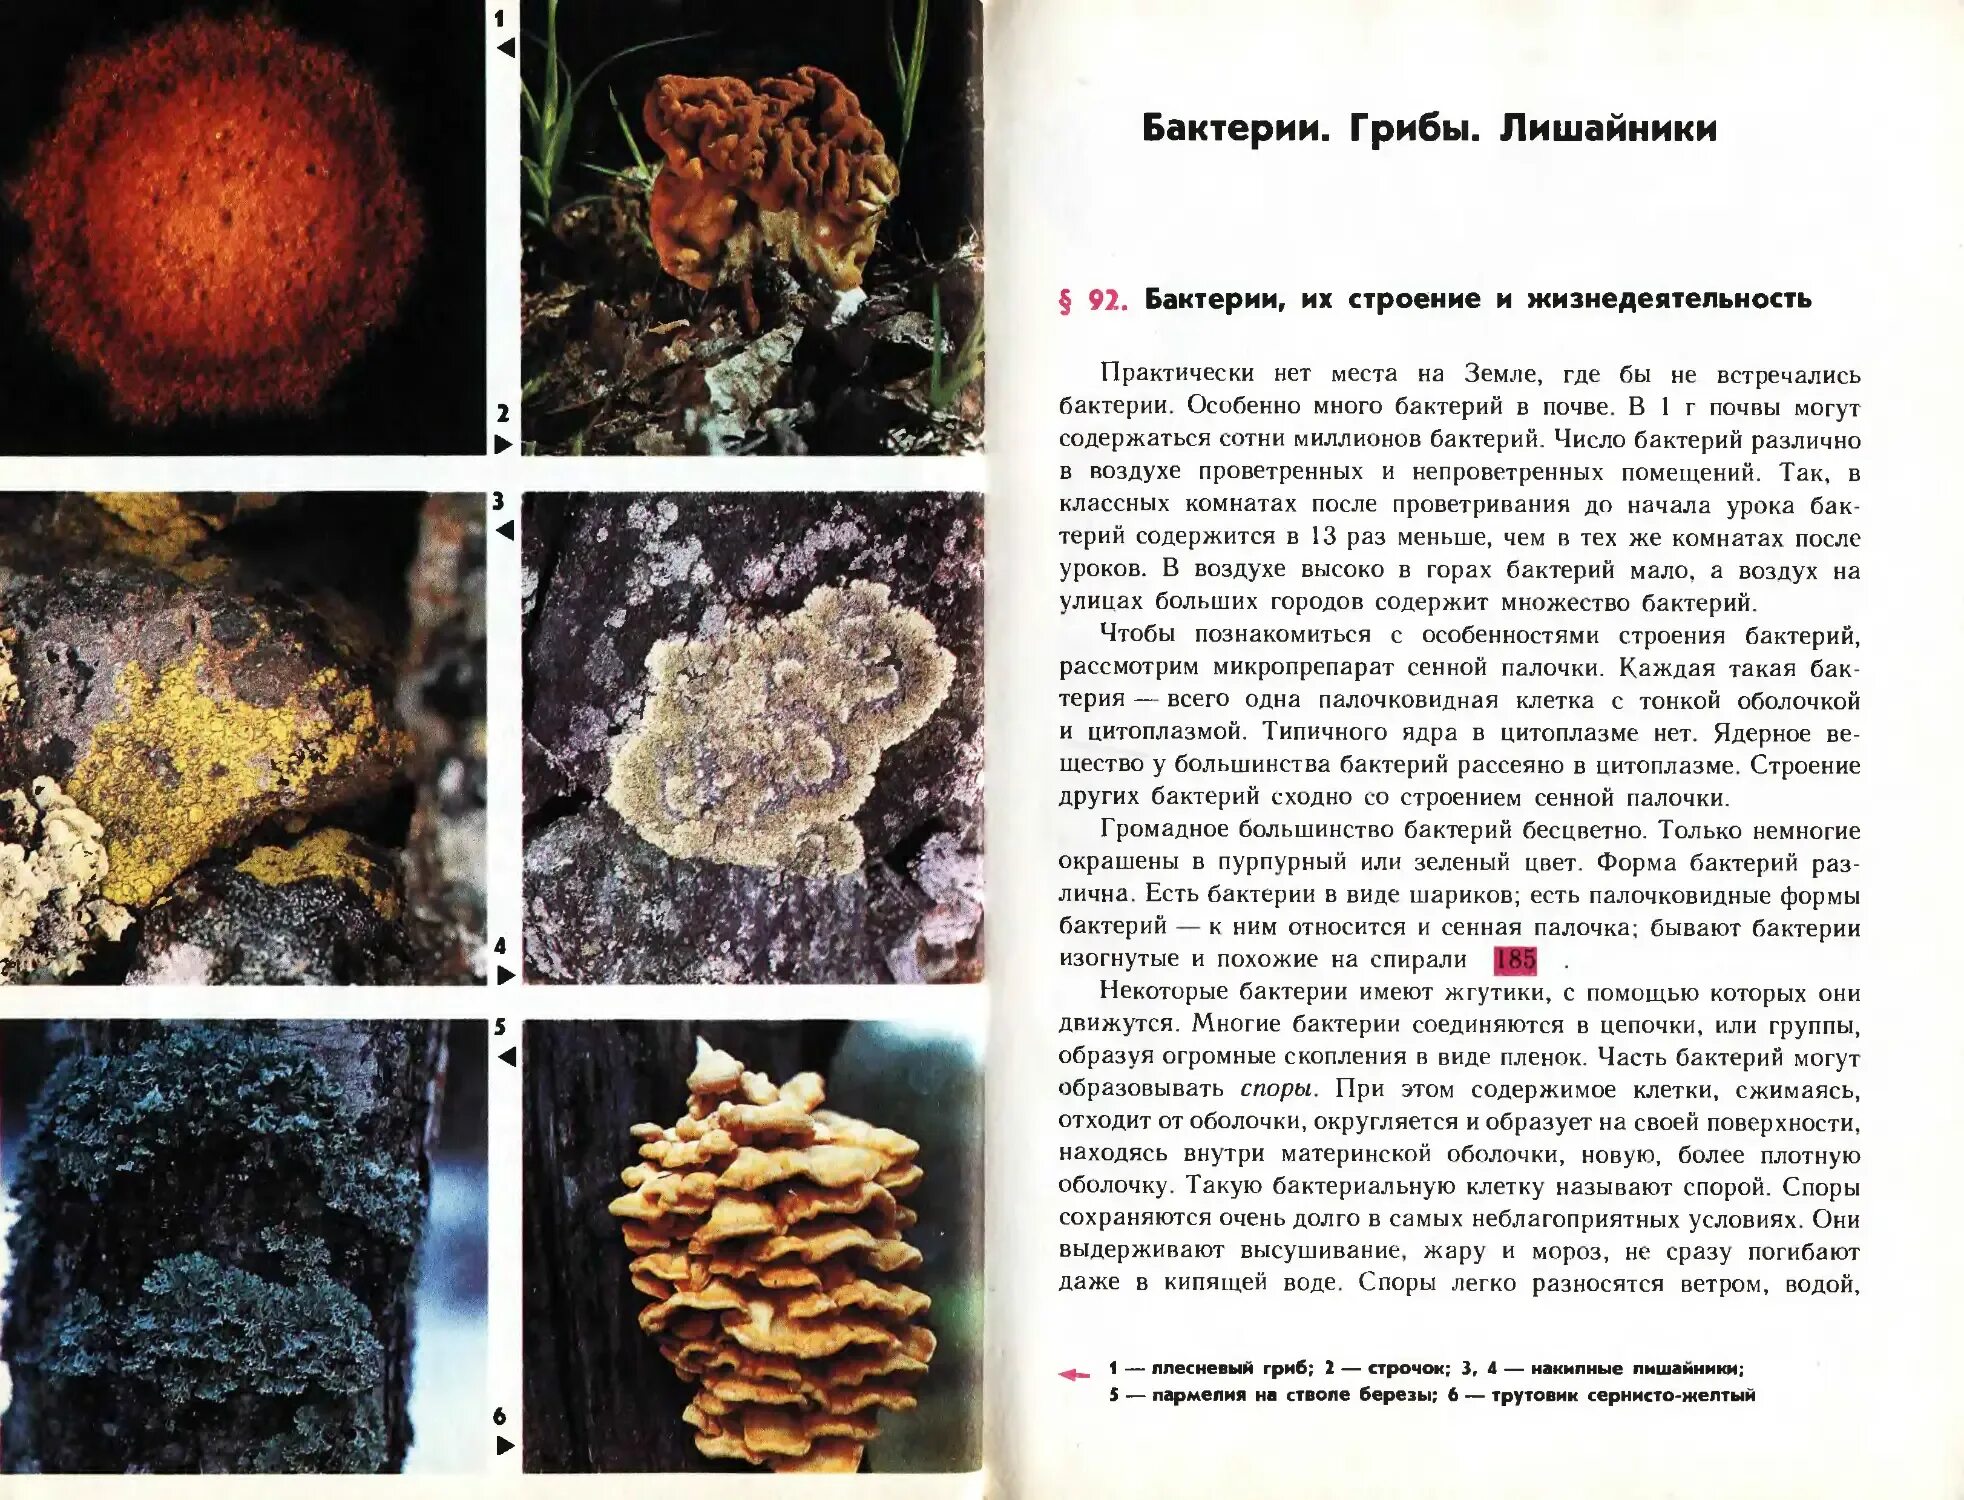 Лишайник относится к грибам. Бактерии грибы лишайники. Грибы и бактерии. Бактерии грибы лишайники таблица. Бактерии грибы лишайники сравнительная таблица.